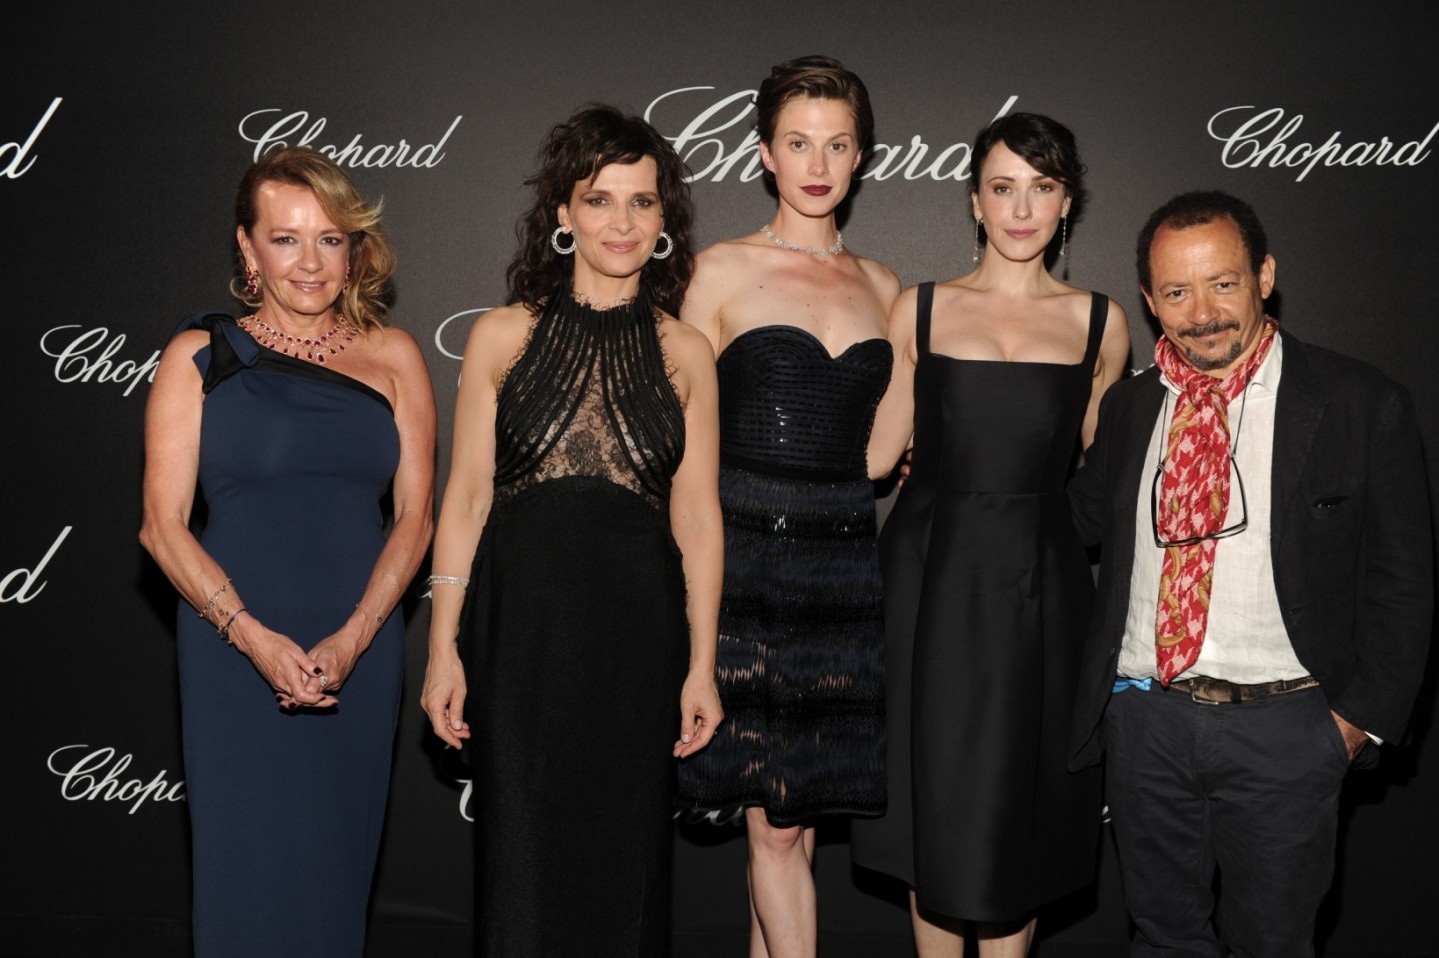 Caroline Scheufele;Juliette Binoche wearing Chopard;Elettra Wiedemann wearing Chopard;Anita Caprioli wearing Chopard;Alessandro Rossellini